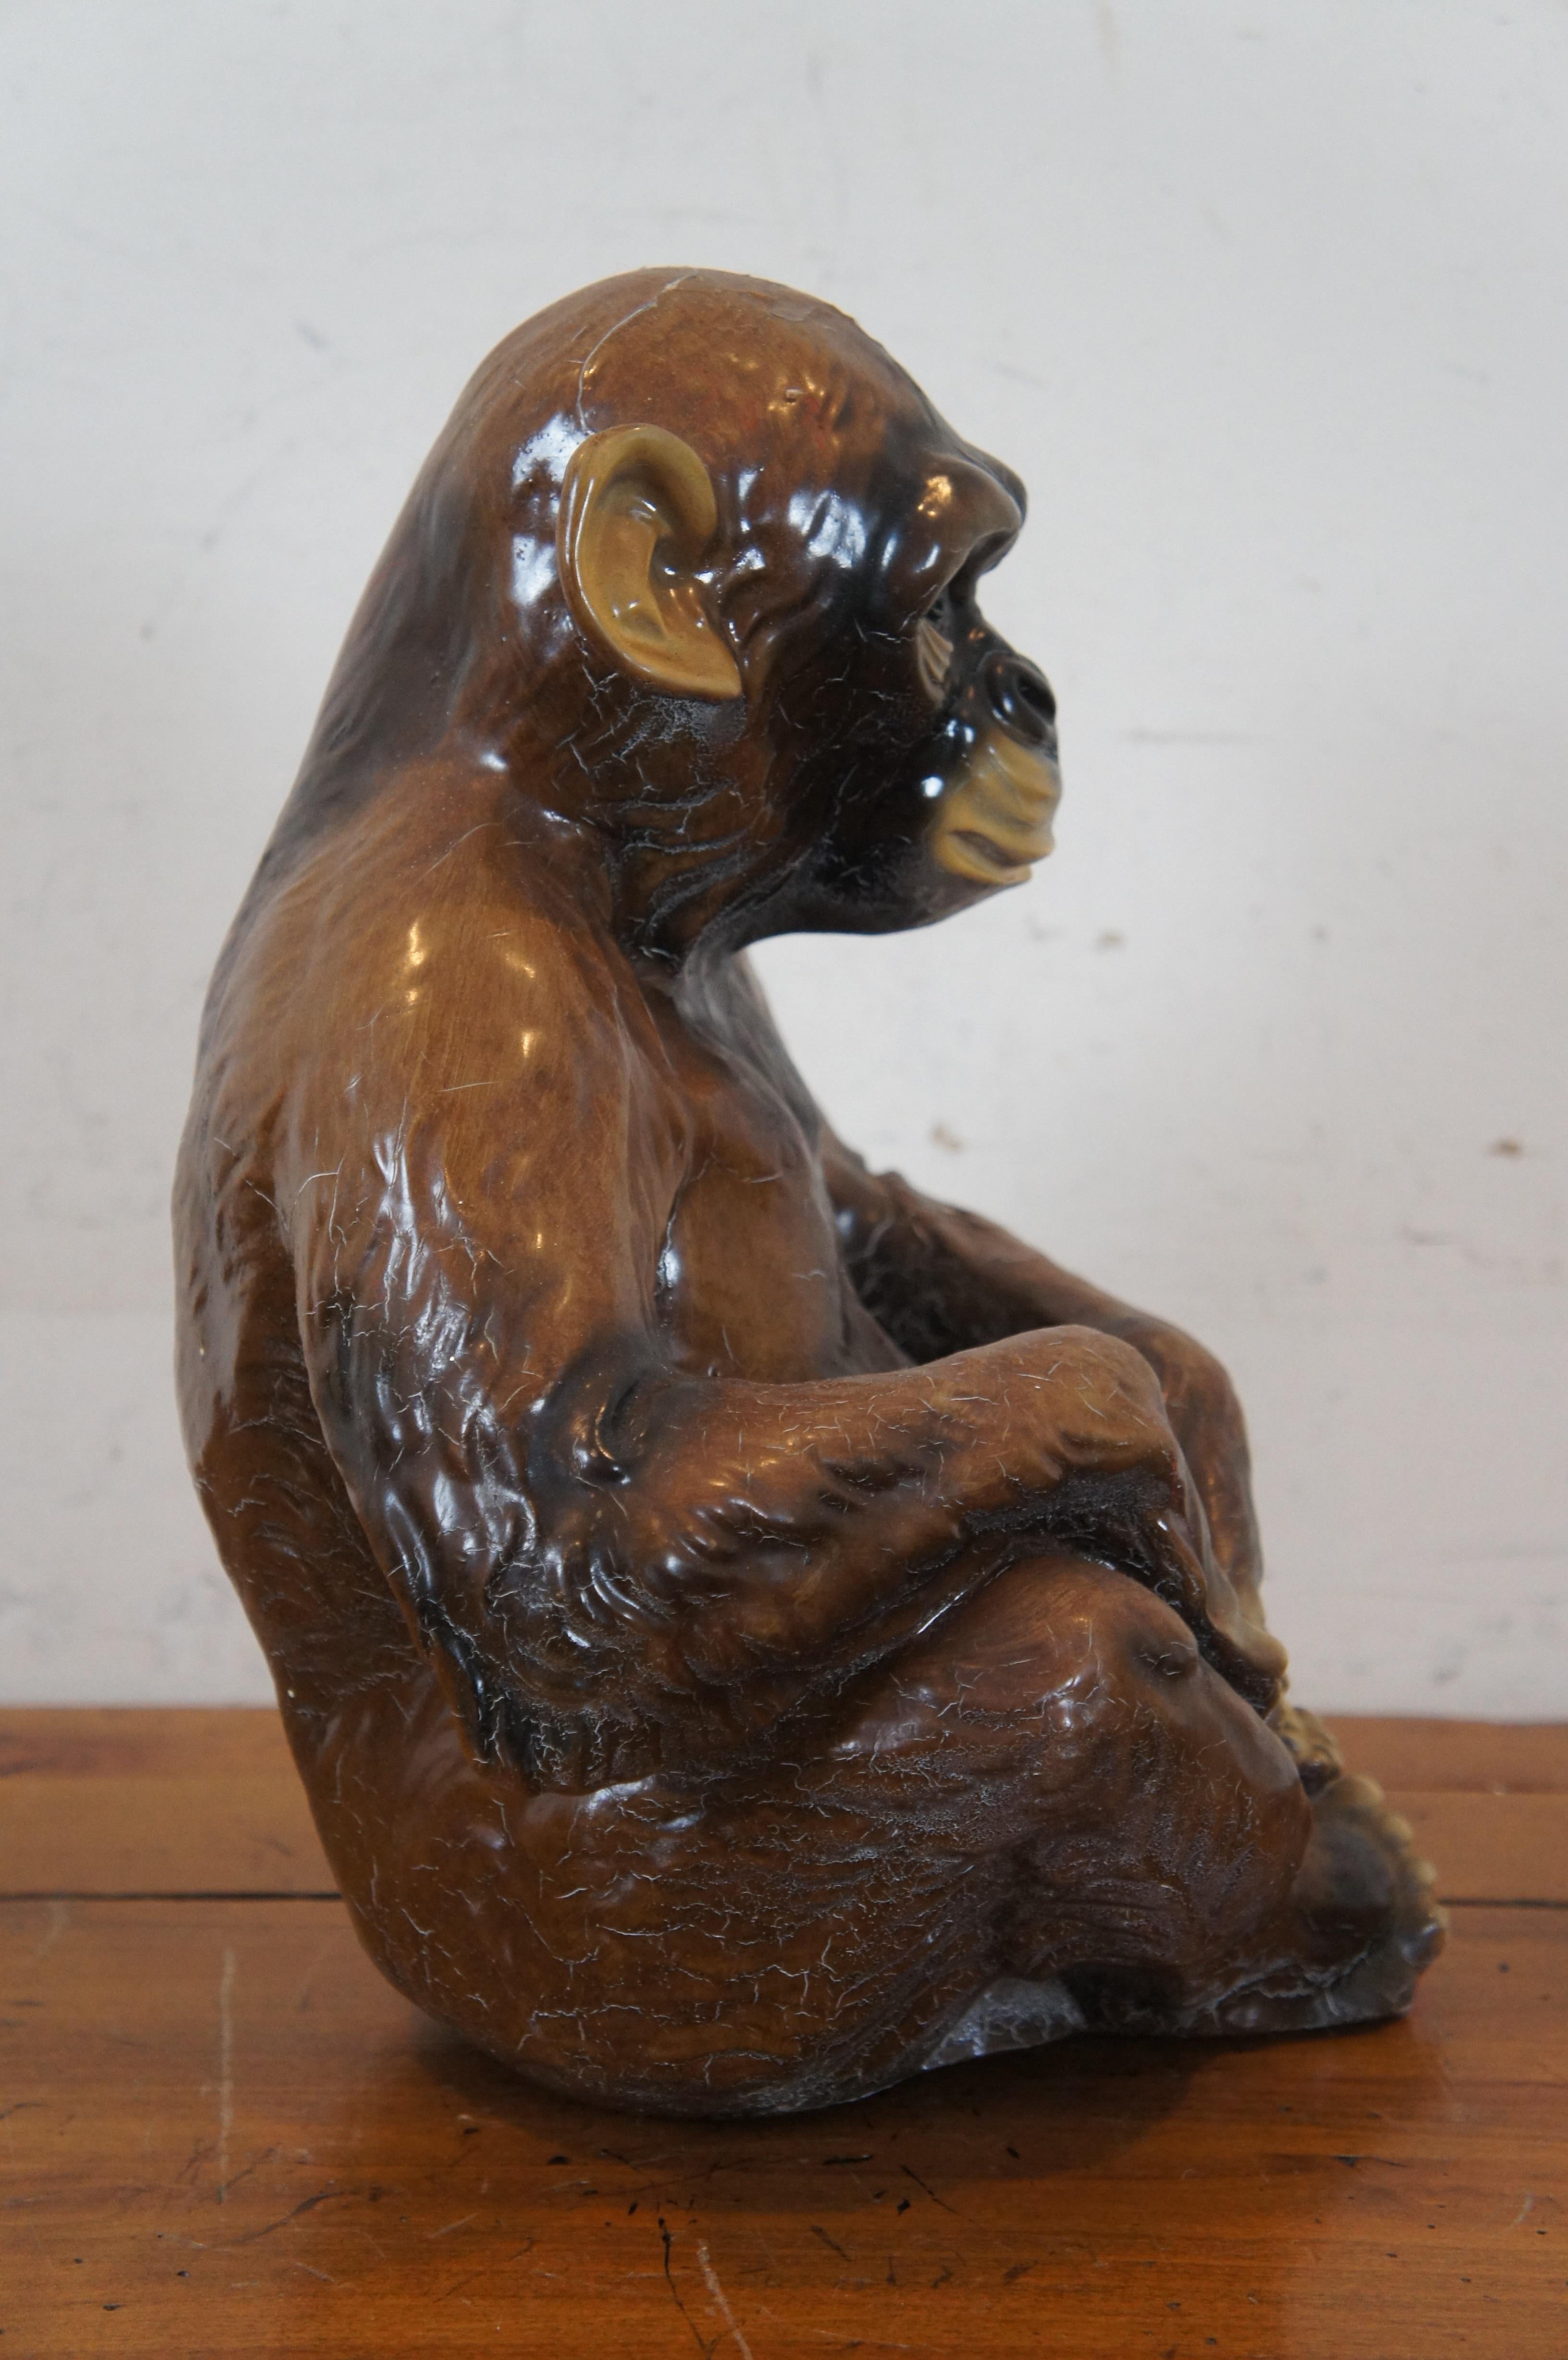 Seltene Marwal Ind Inc. sitzende Chalkware-Affen-Chimp-Ape-Skulptur Statue, 13